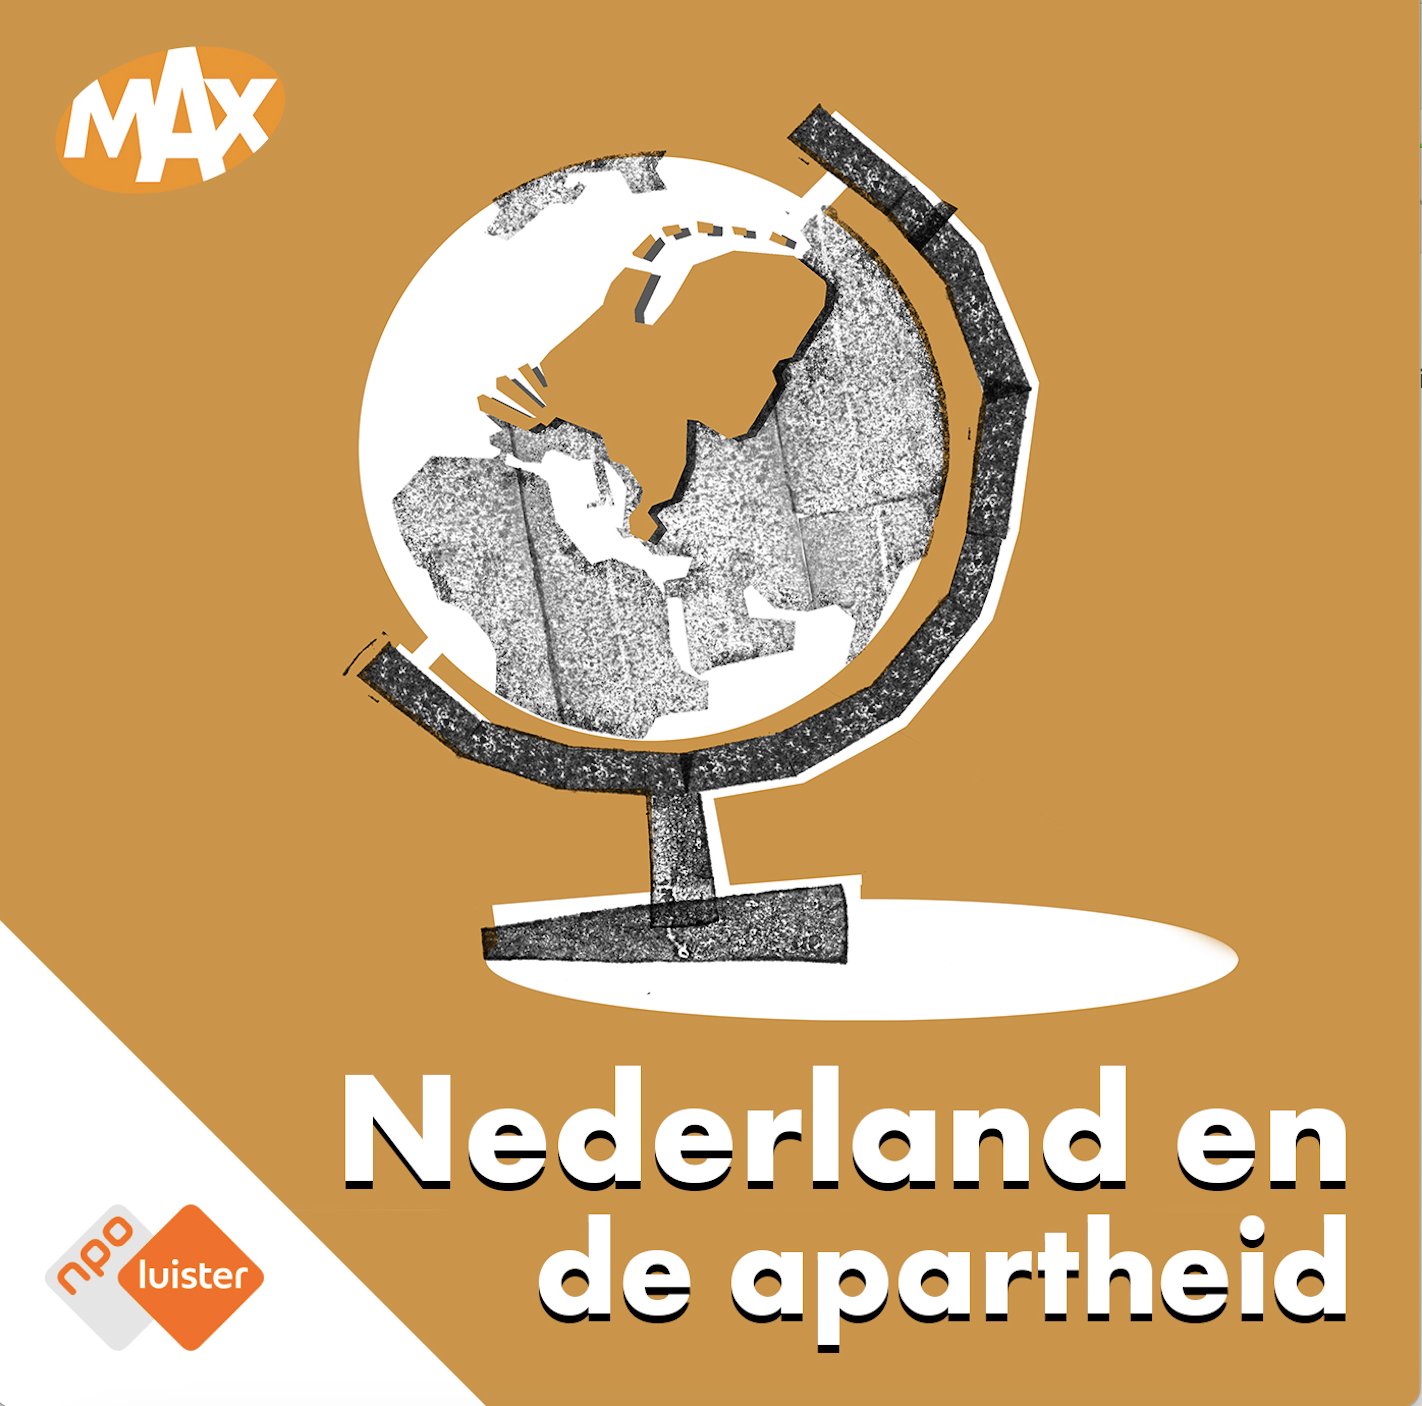 MAX-Podcast Nederland onderzoekt rol Nederland tijdens apartheid